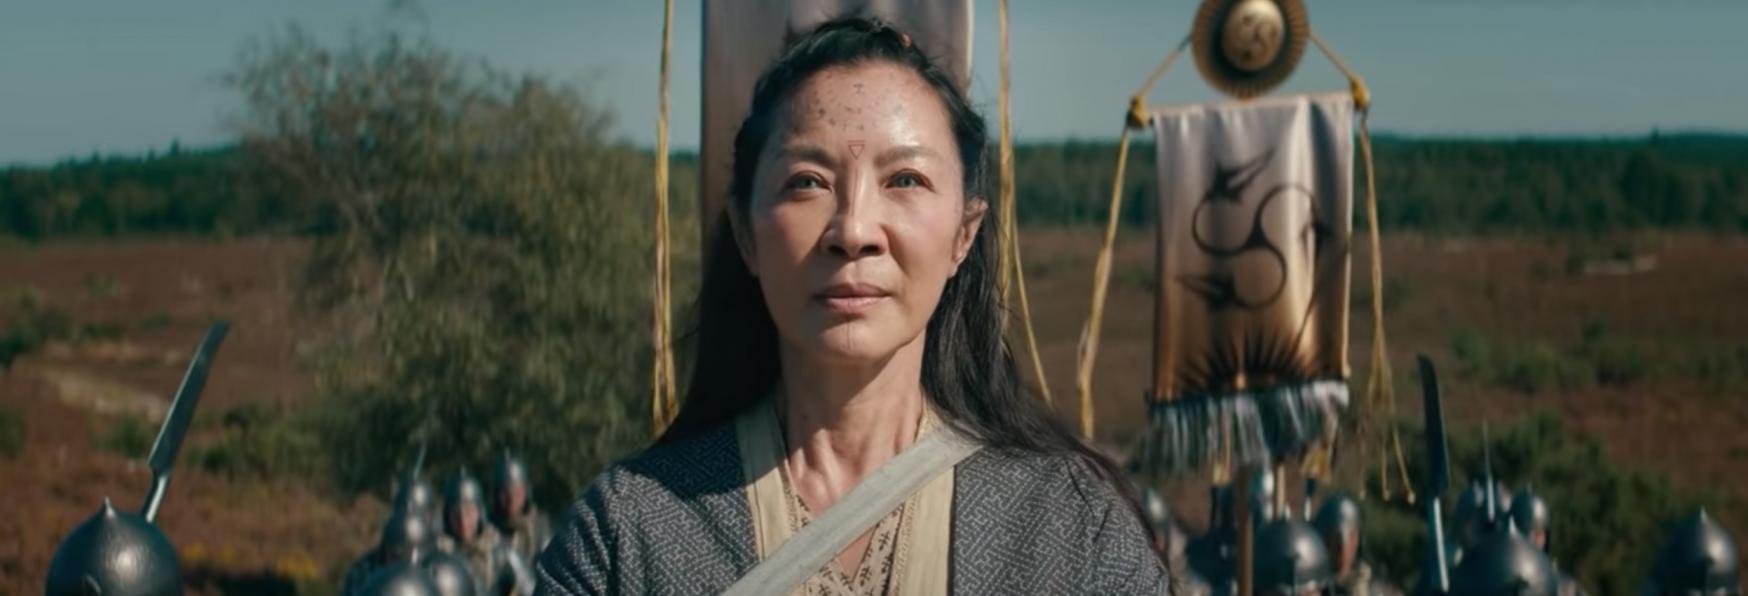 The Witcher: Blood Origin - Michelle Yeoh parla del suo Personaggio nella Serie TV